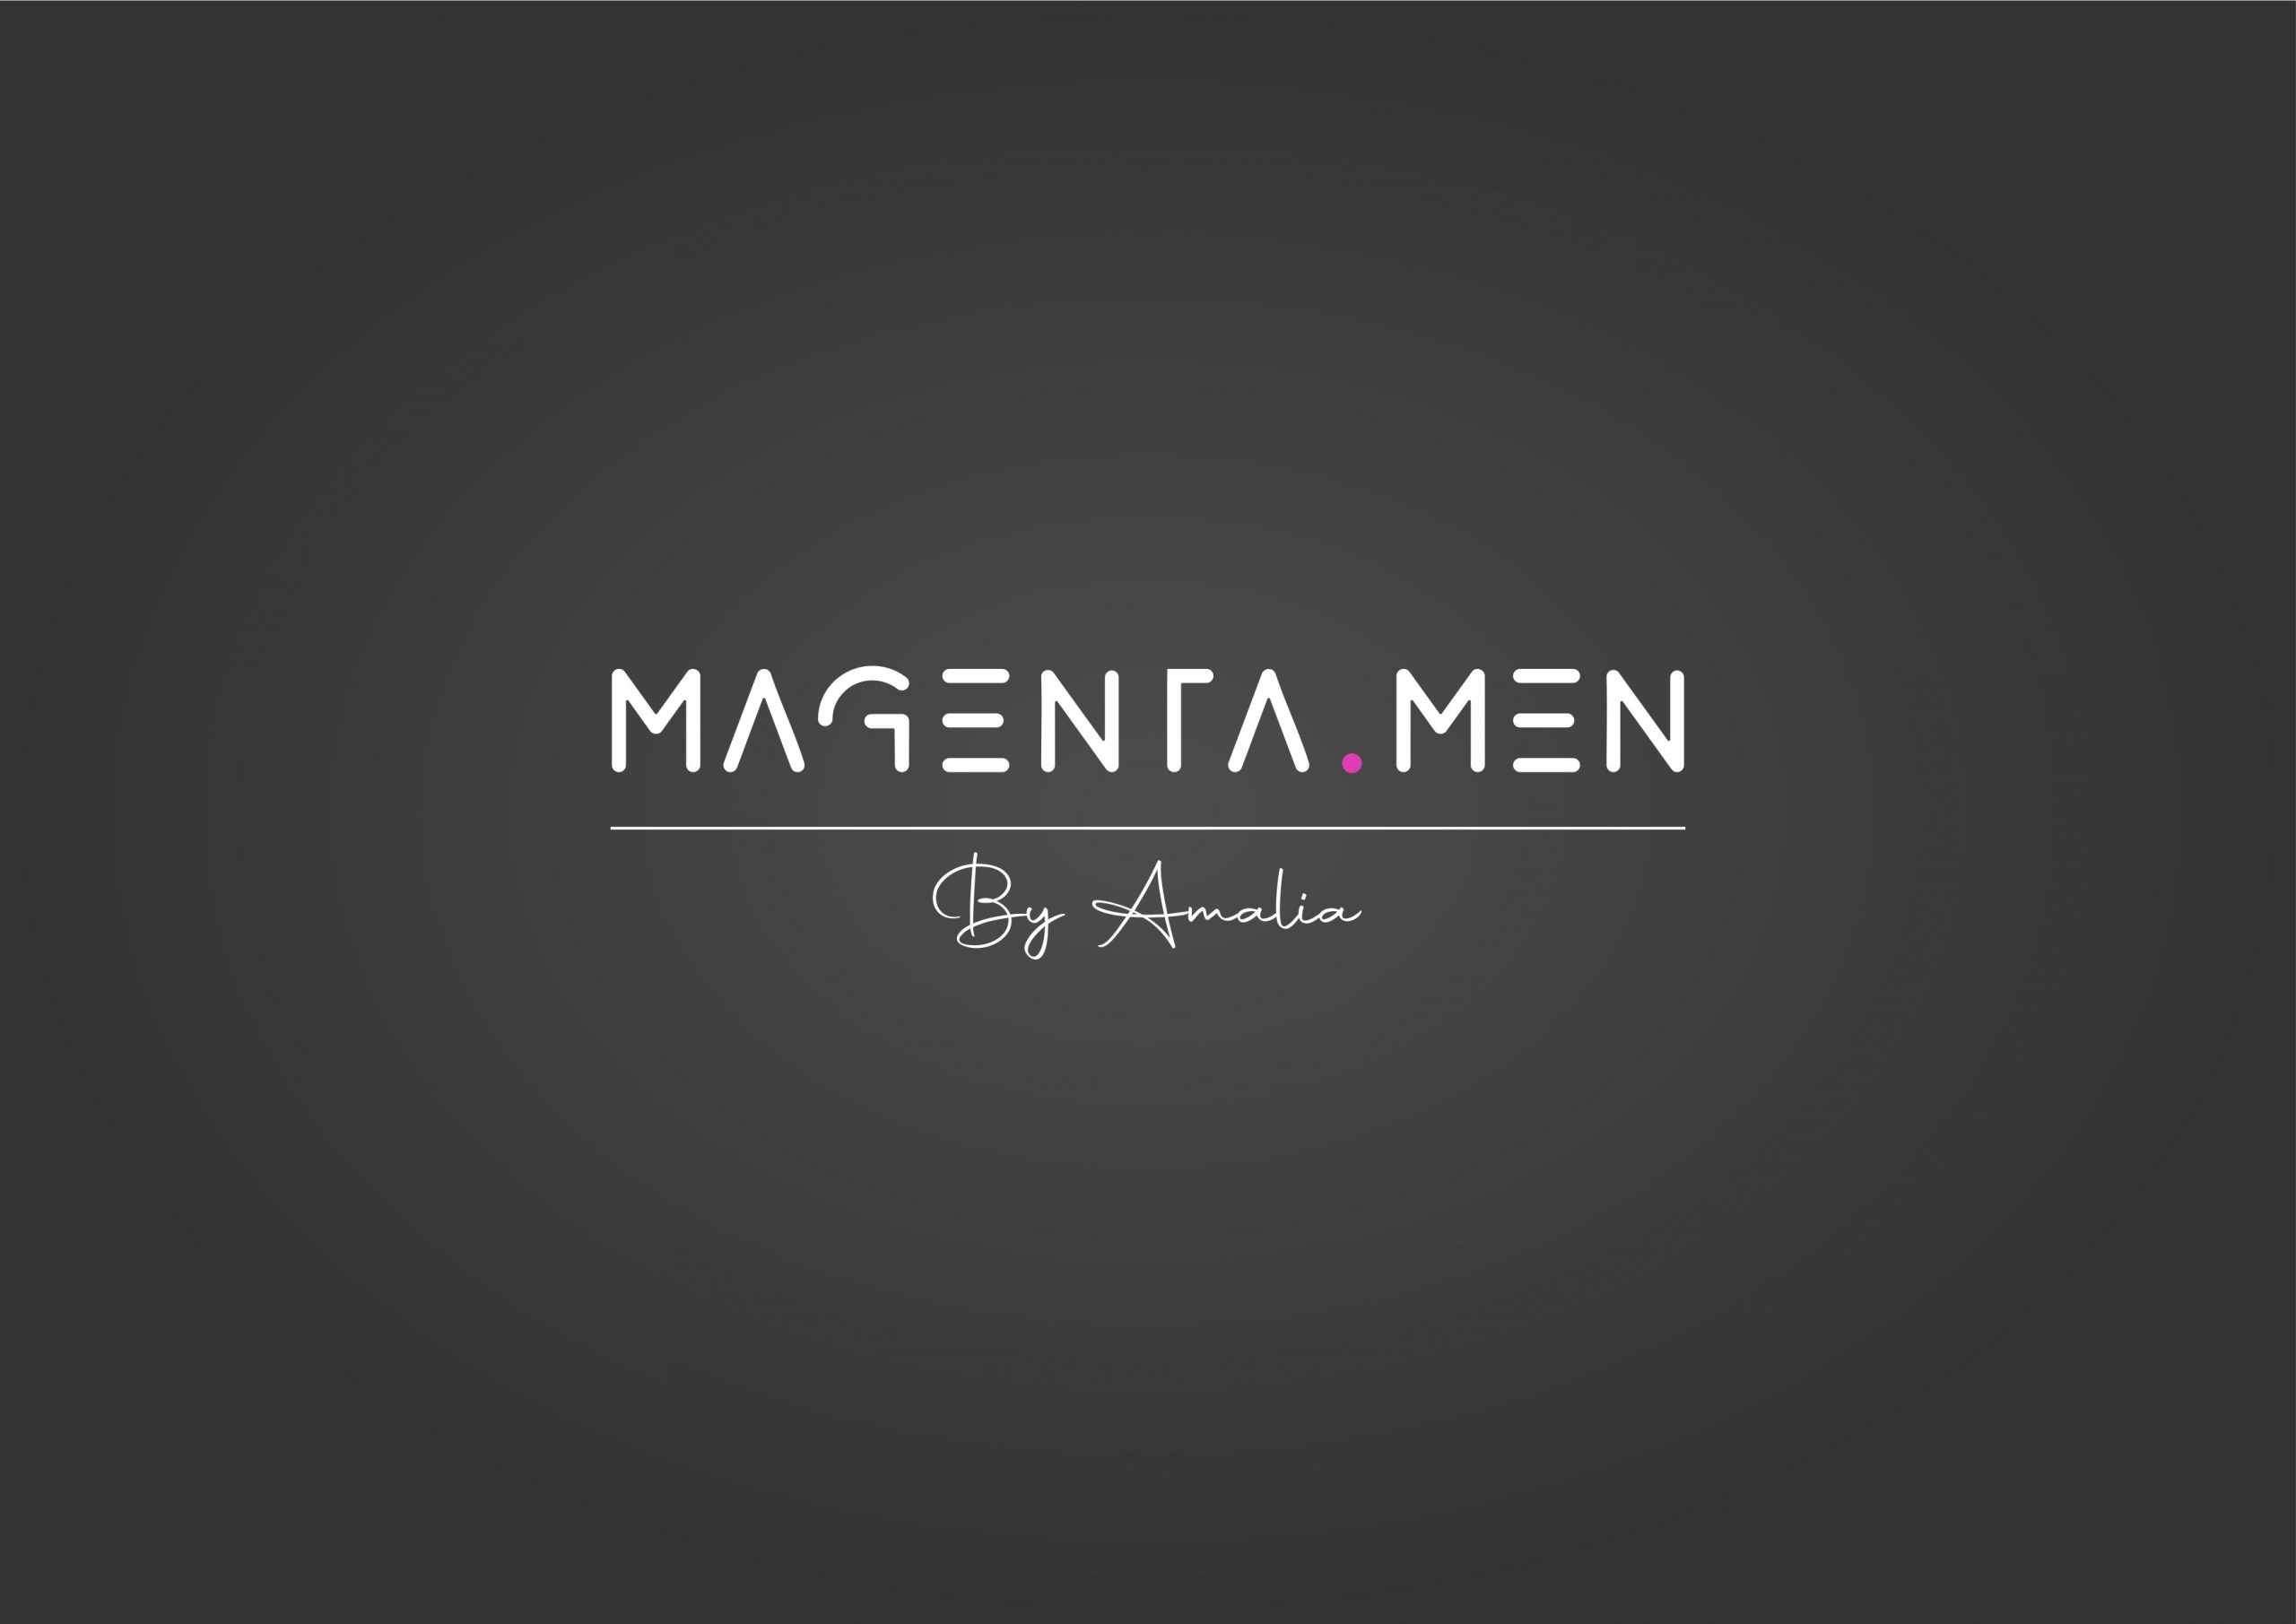 magenta logo darkbg 1 scaled